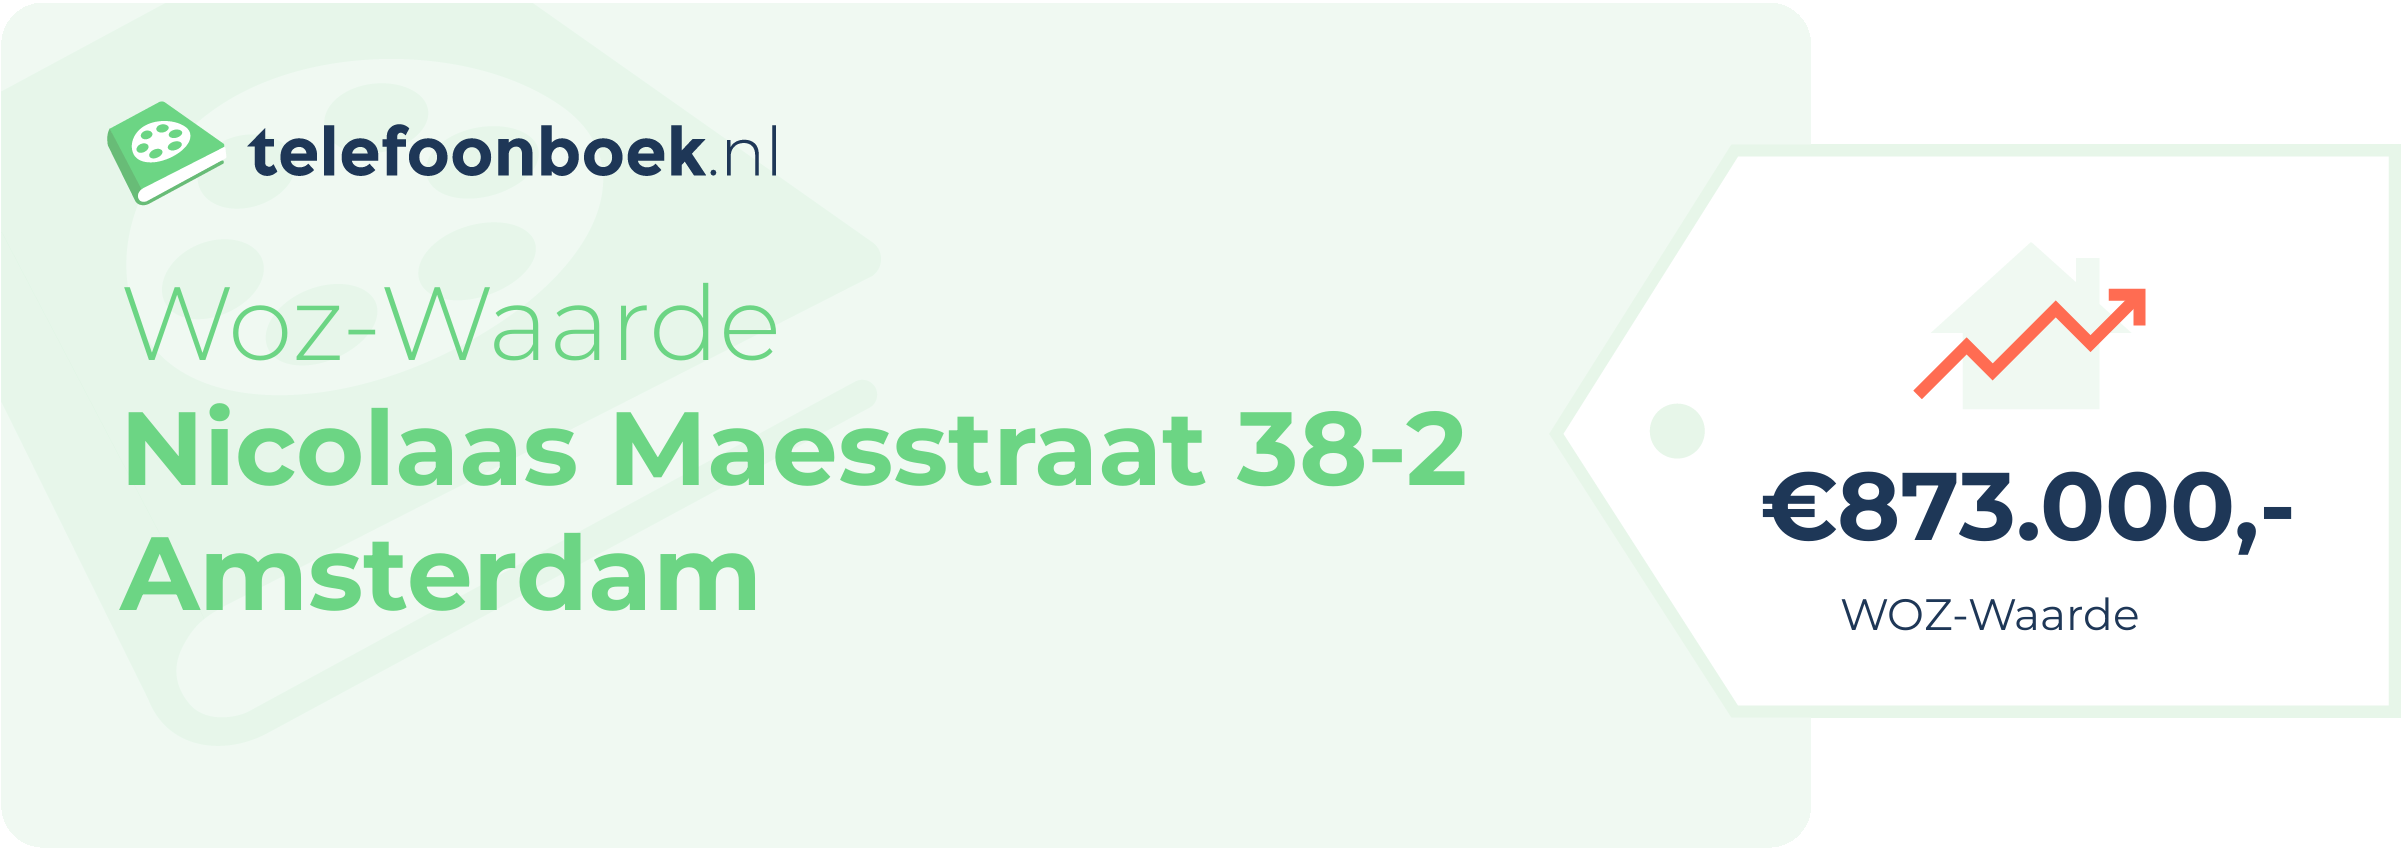 WOZ-waarde Nicolaas Maesstraat 38-2 Amsterdam